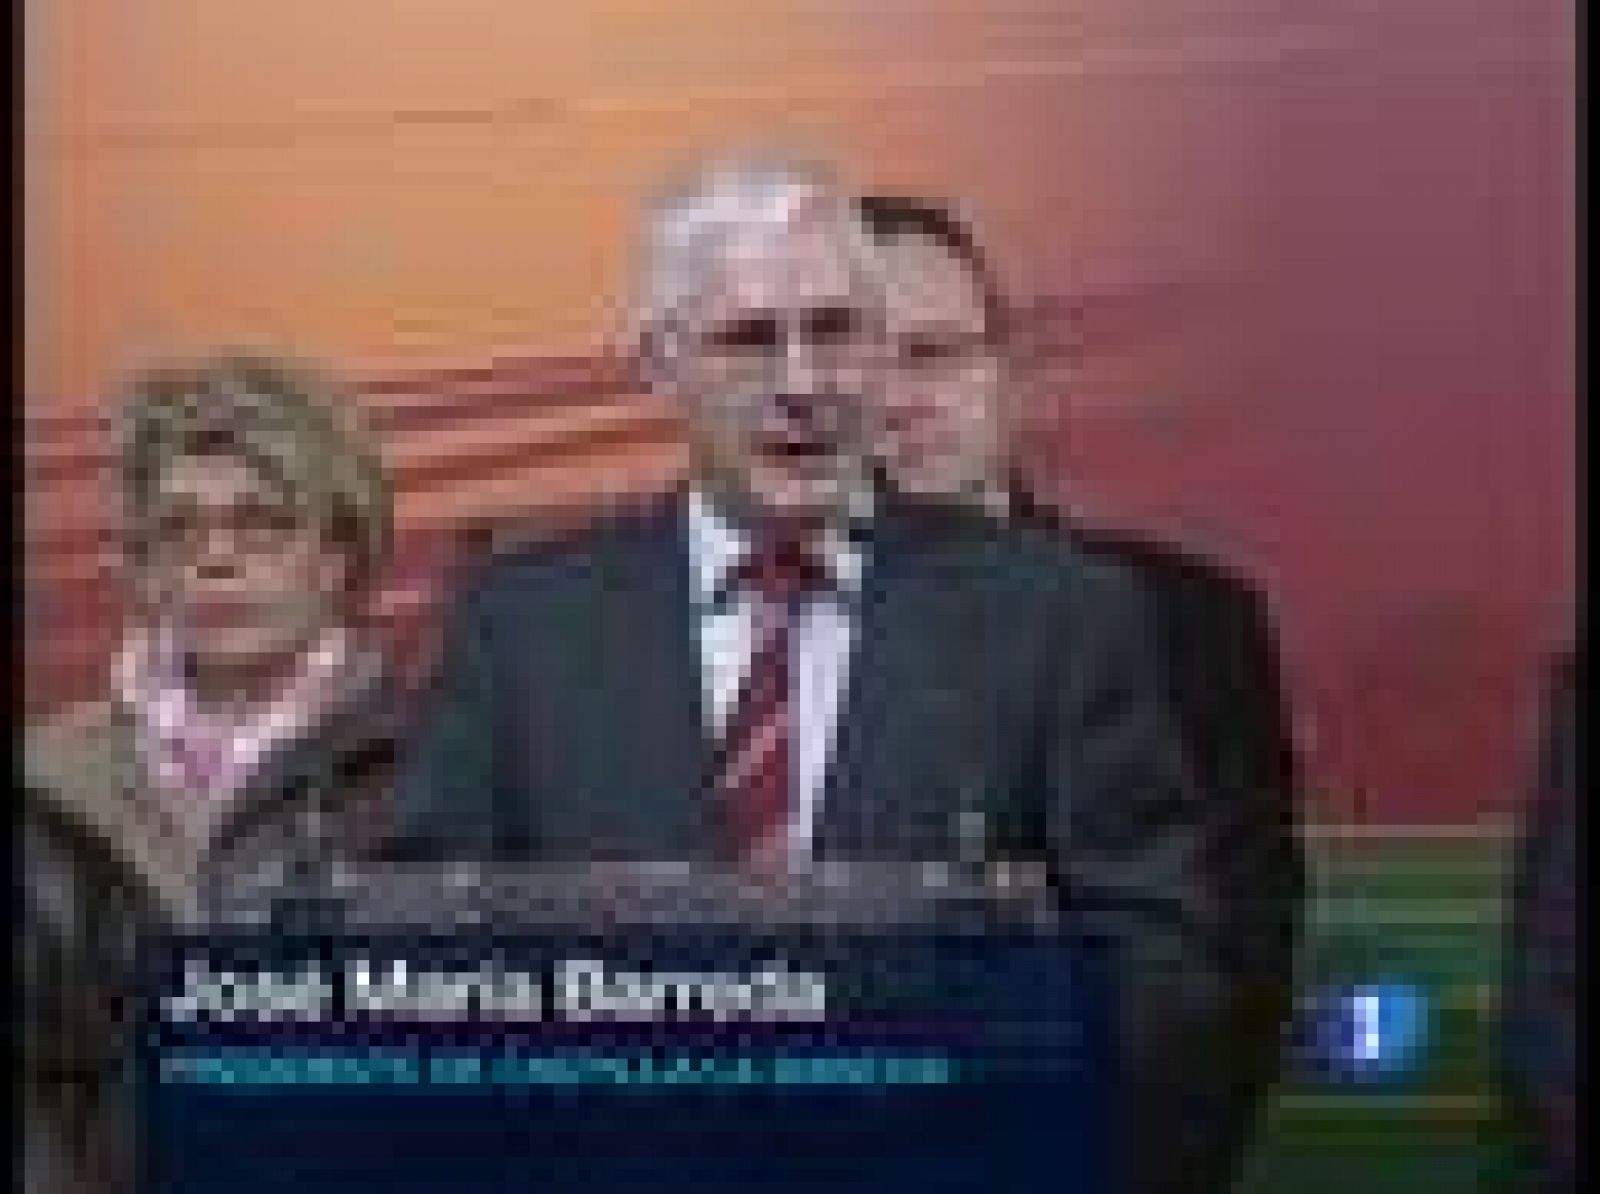 El presidente de Castilla-La Mancha ha respondido así a las críticas recibidas por varios miembros del PSOE por sugerir que eran necesarios cambios en el Gobierno.